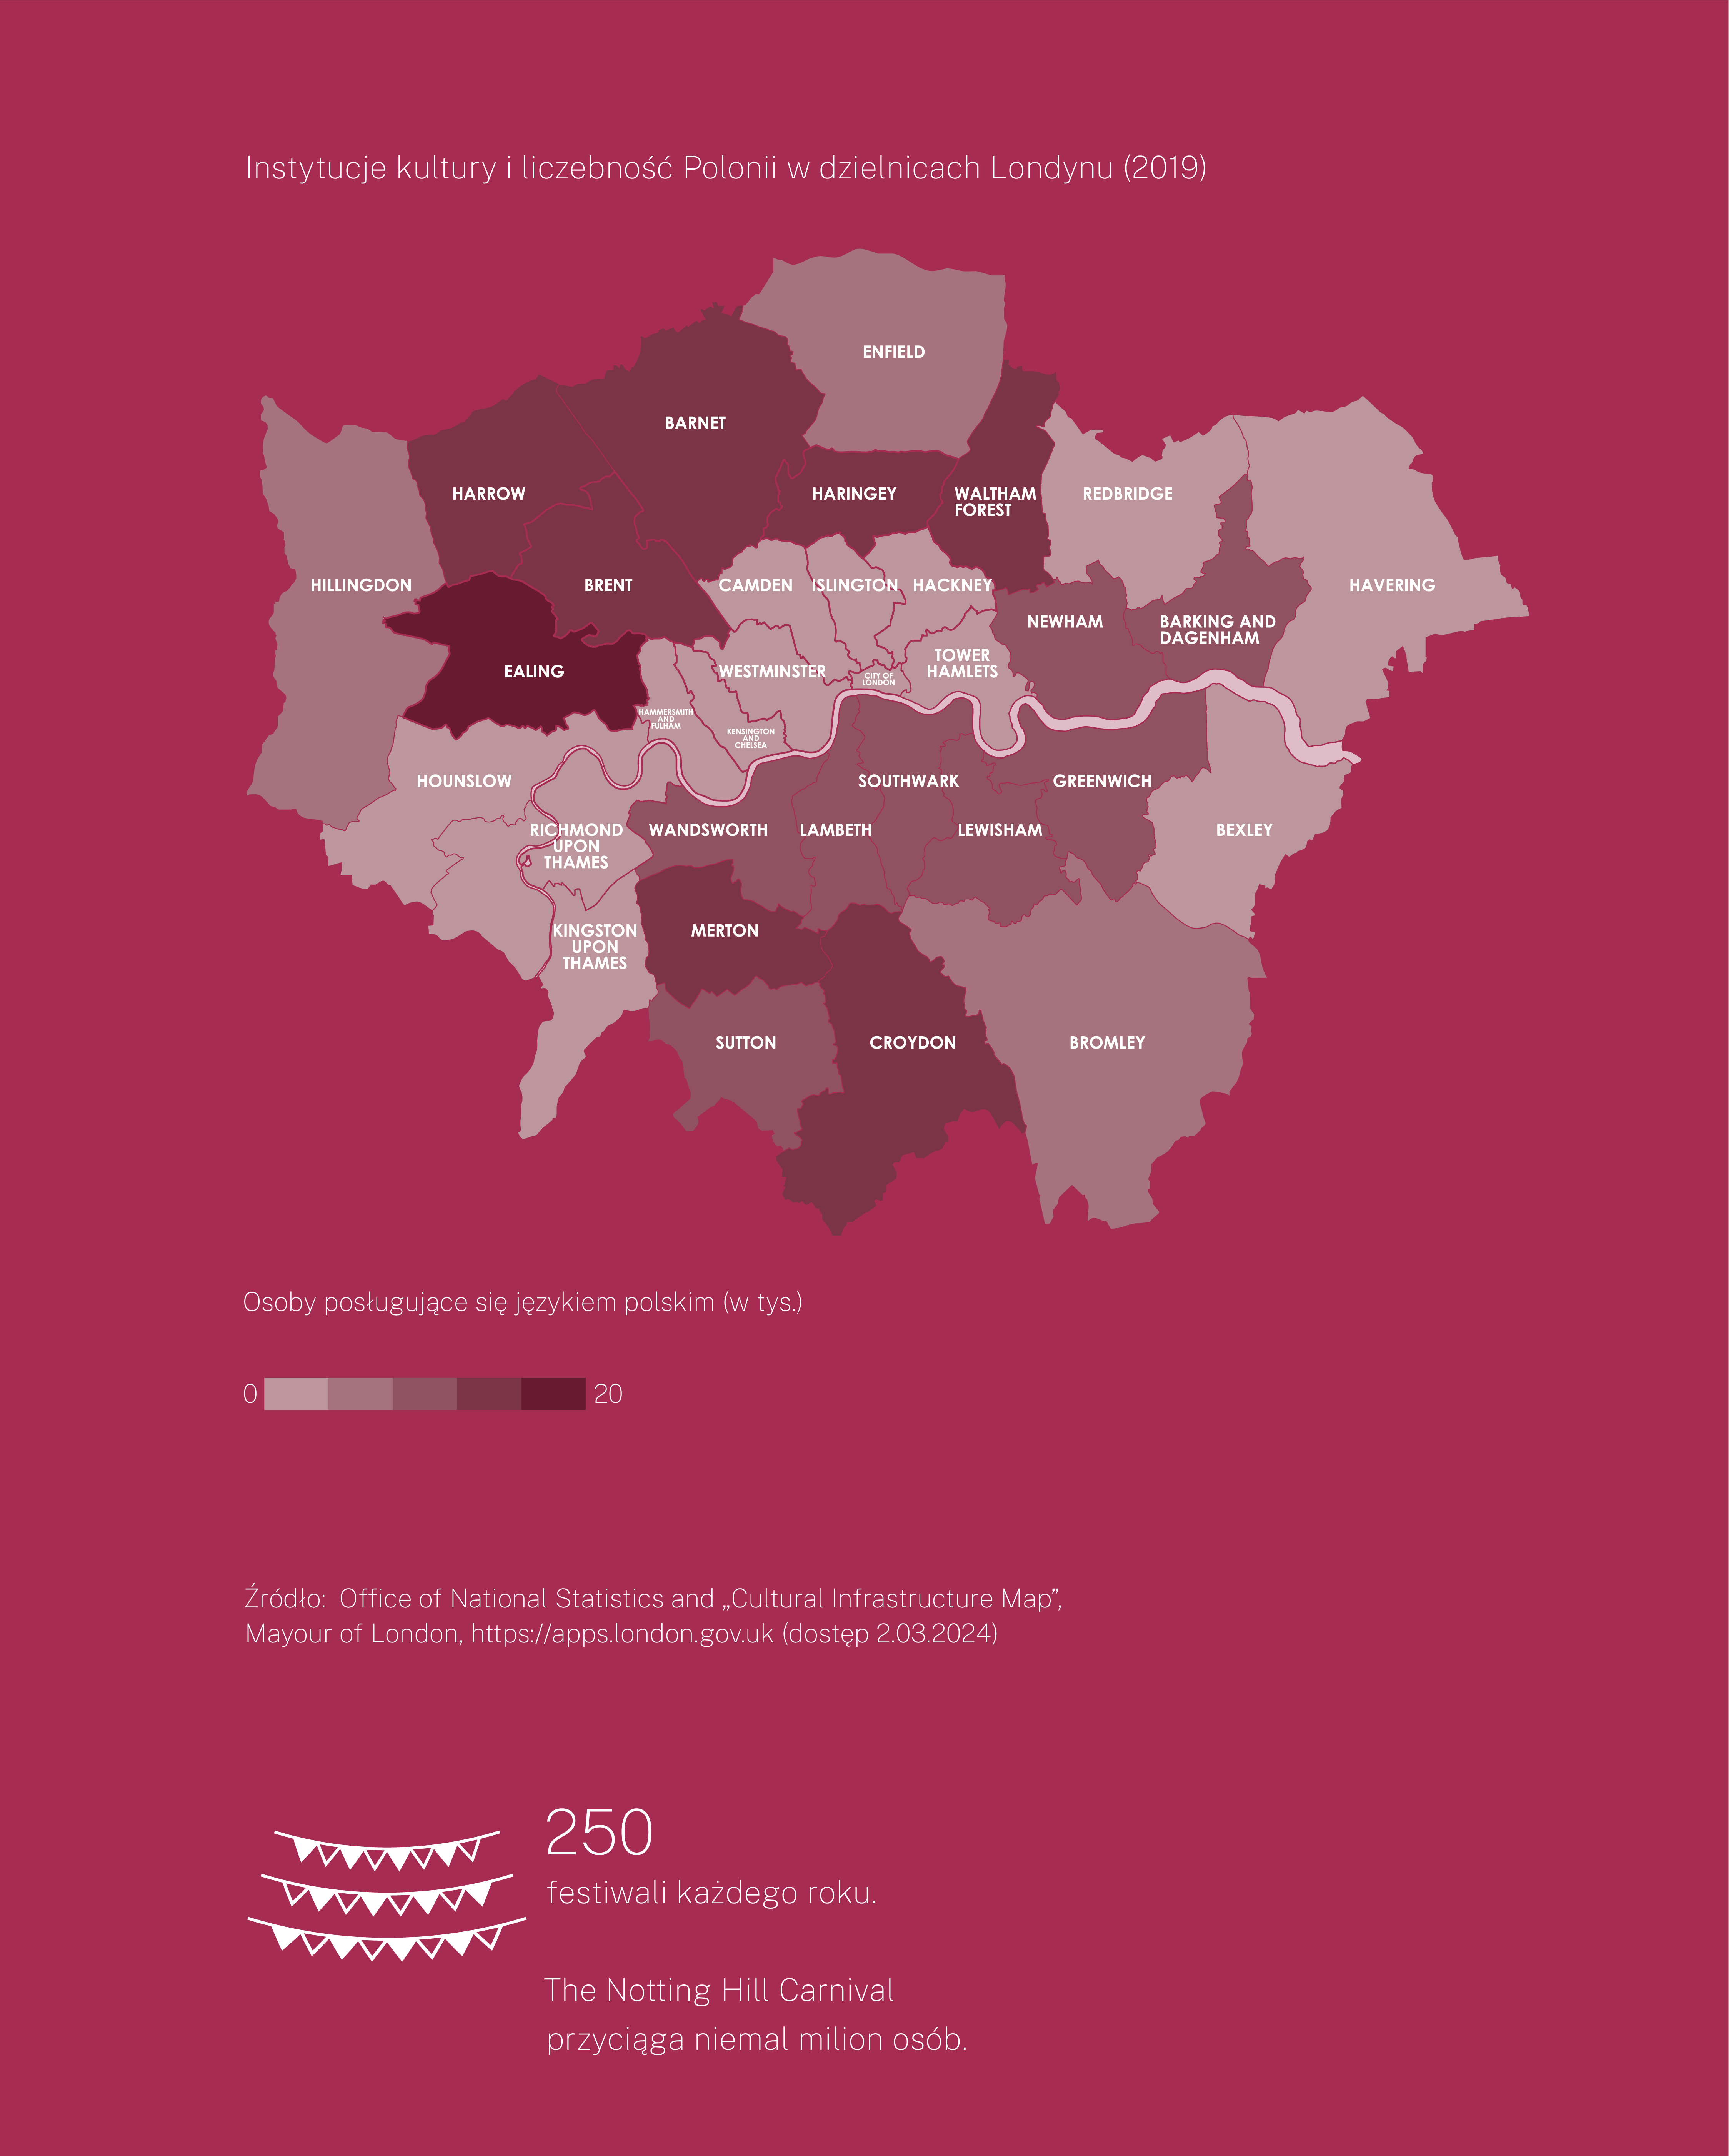 Mapa Londynu z podziałem na dzielnice. Mapa ilustruje liczebność Polonii w poszczególnych dzielnicach. Najwięcej Polaków zamieszkuje dzielnicę Ealing